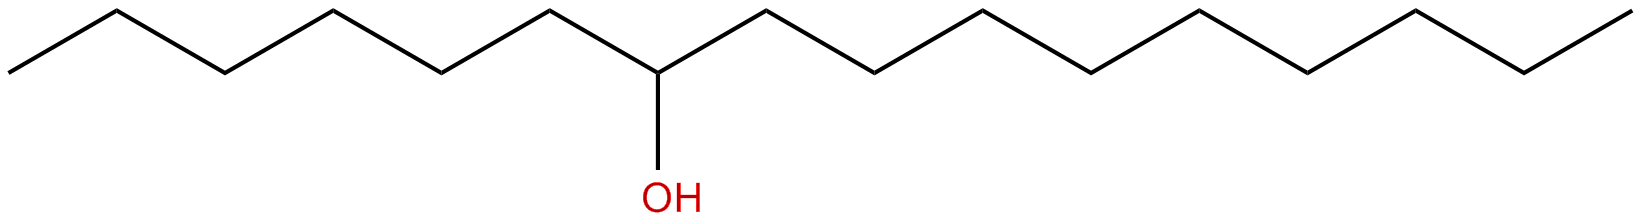 Image of 7-hexadecanol